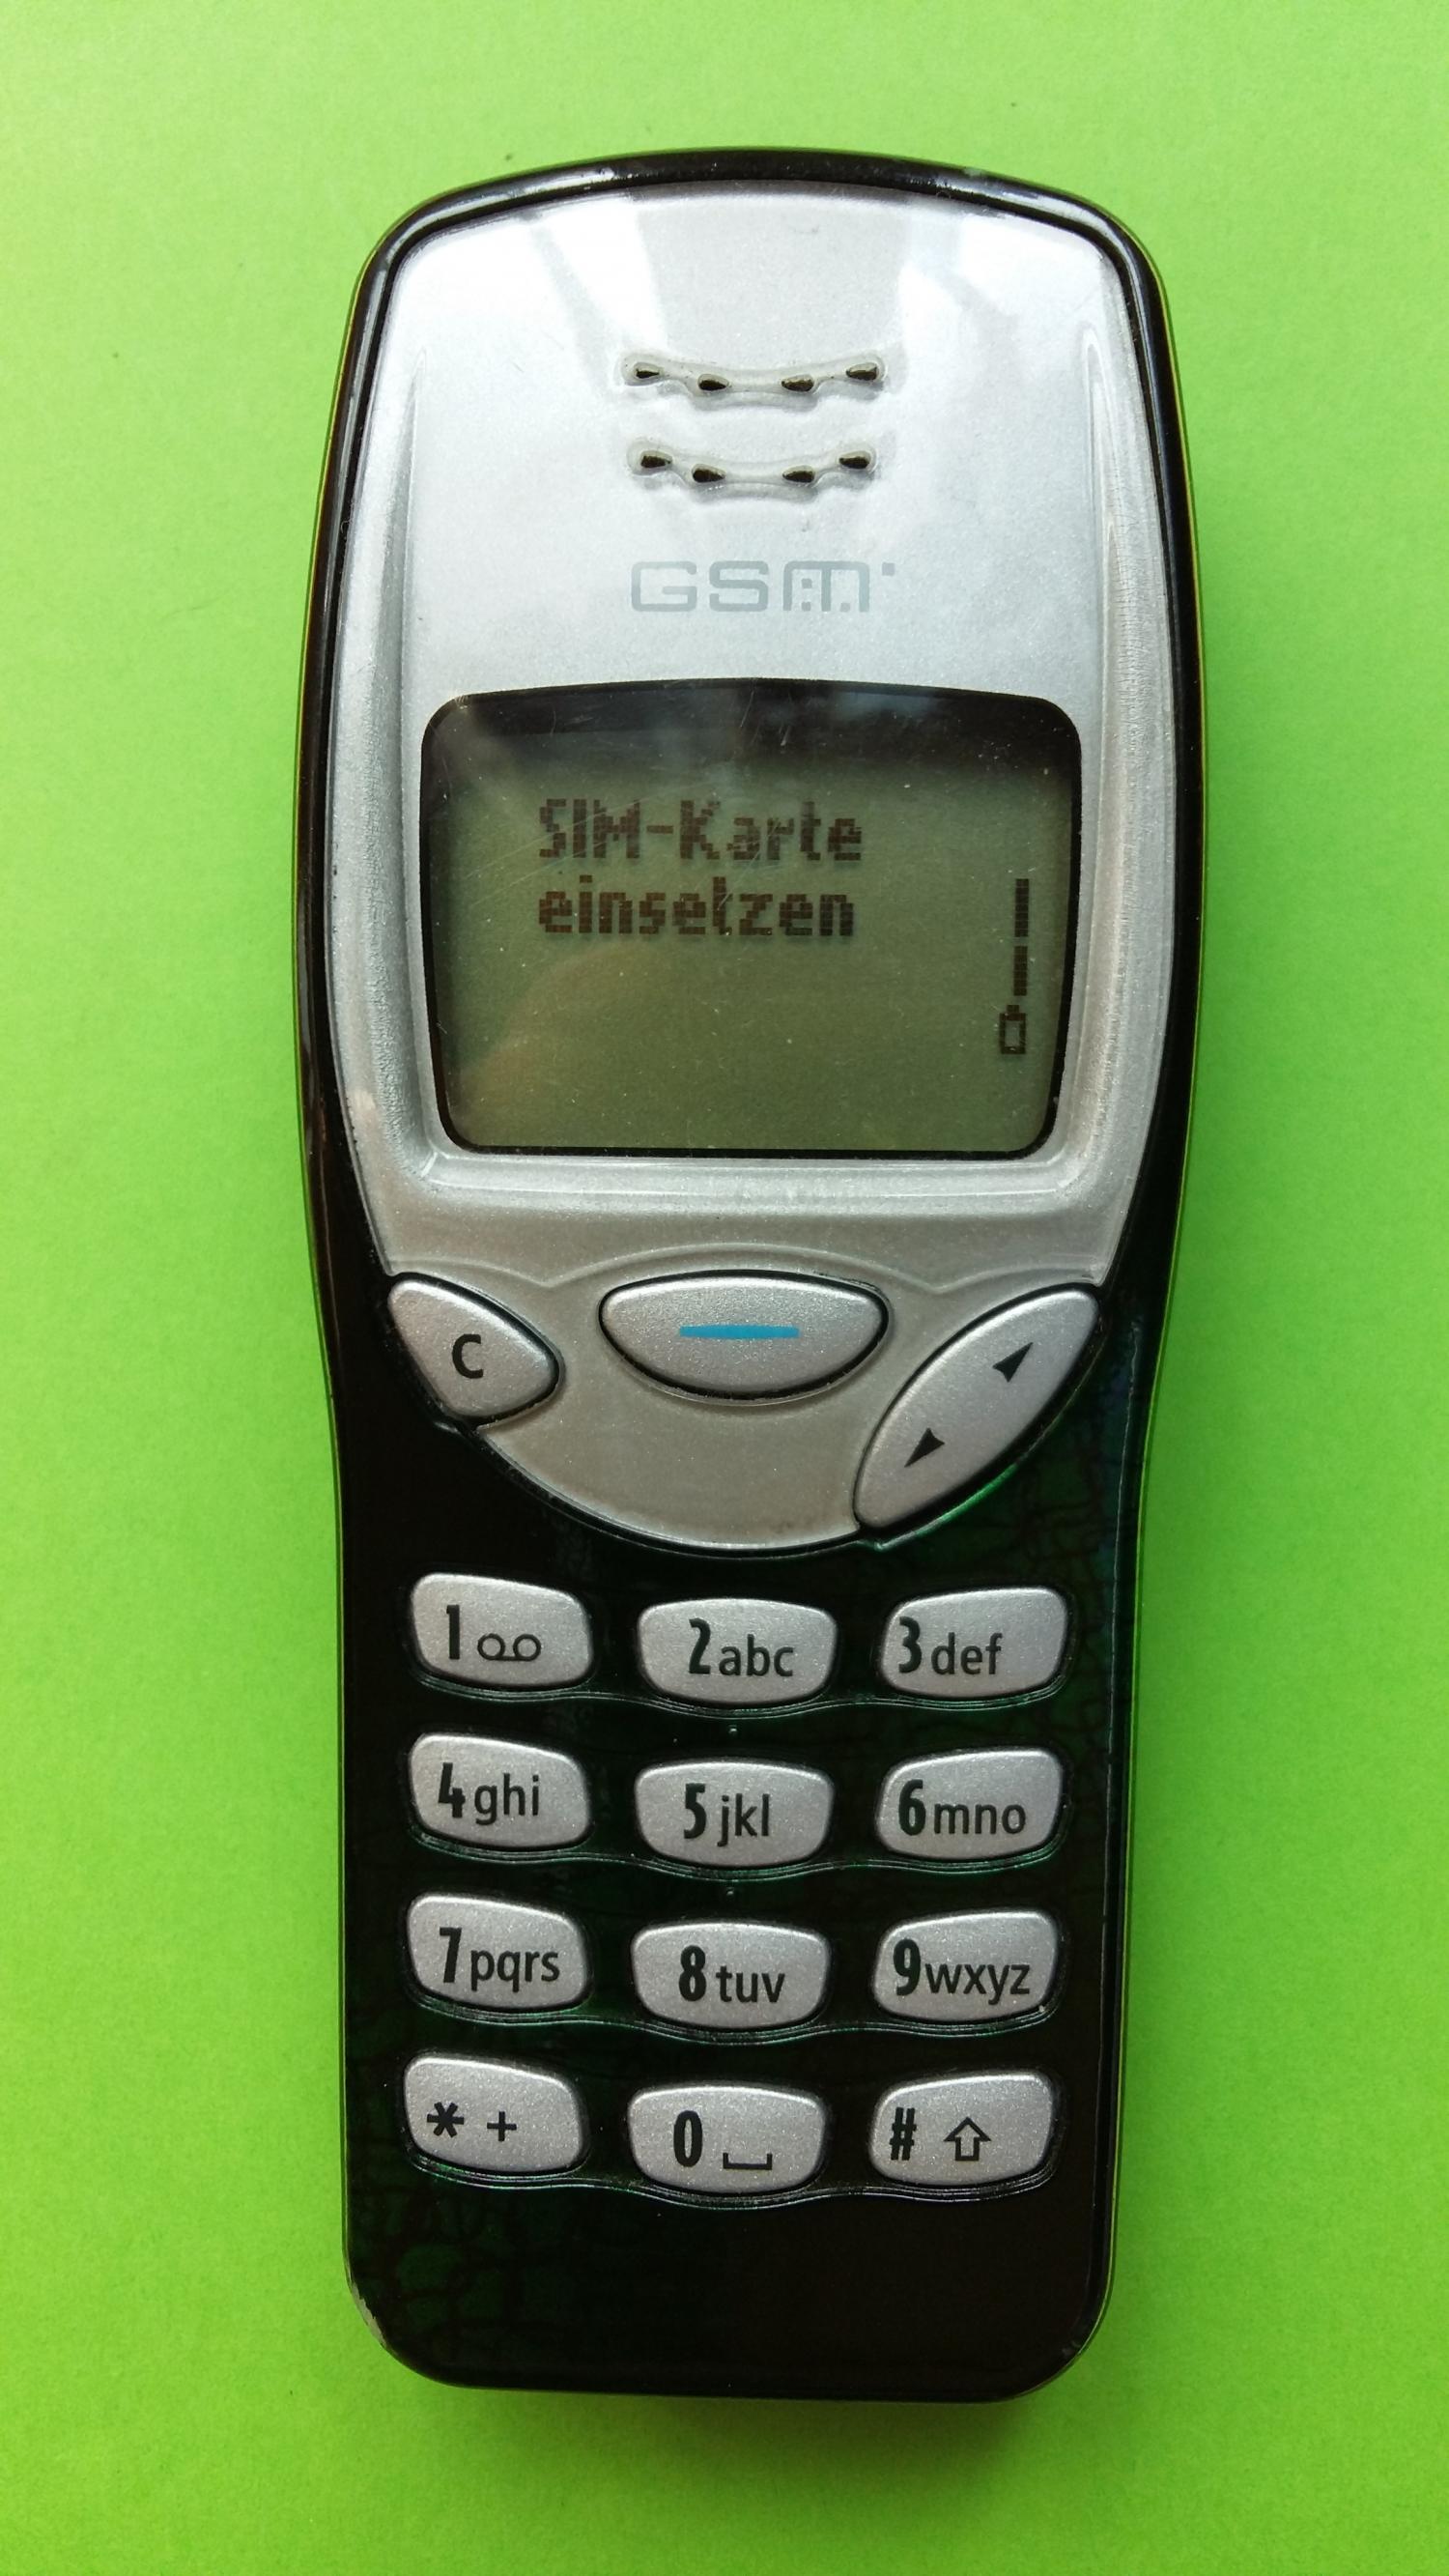 image-7303032-Nokia 3210 (32)1.jpg